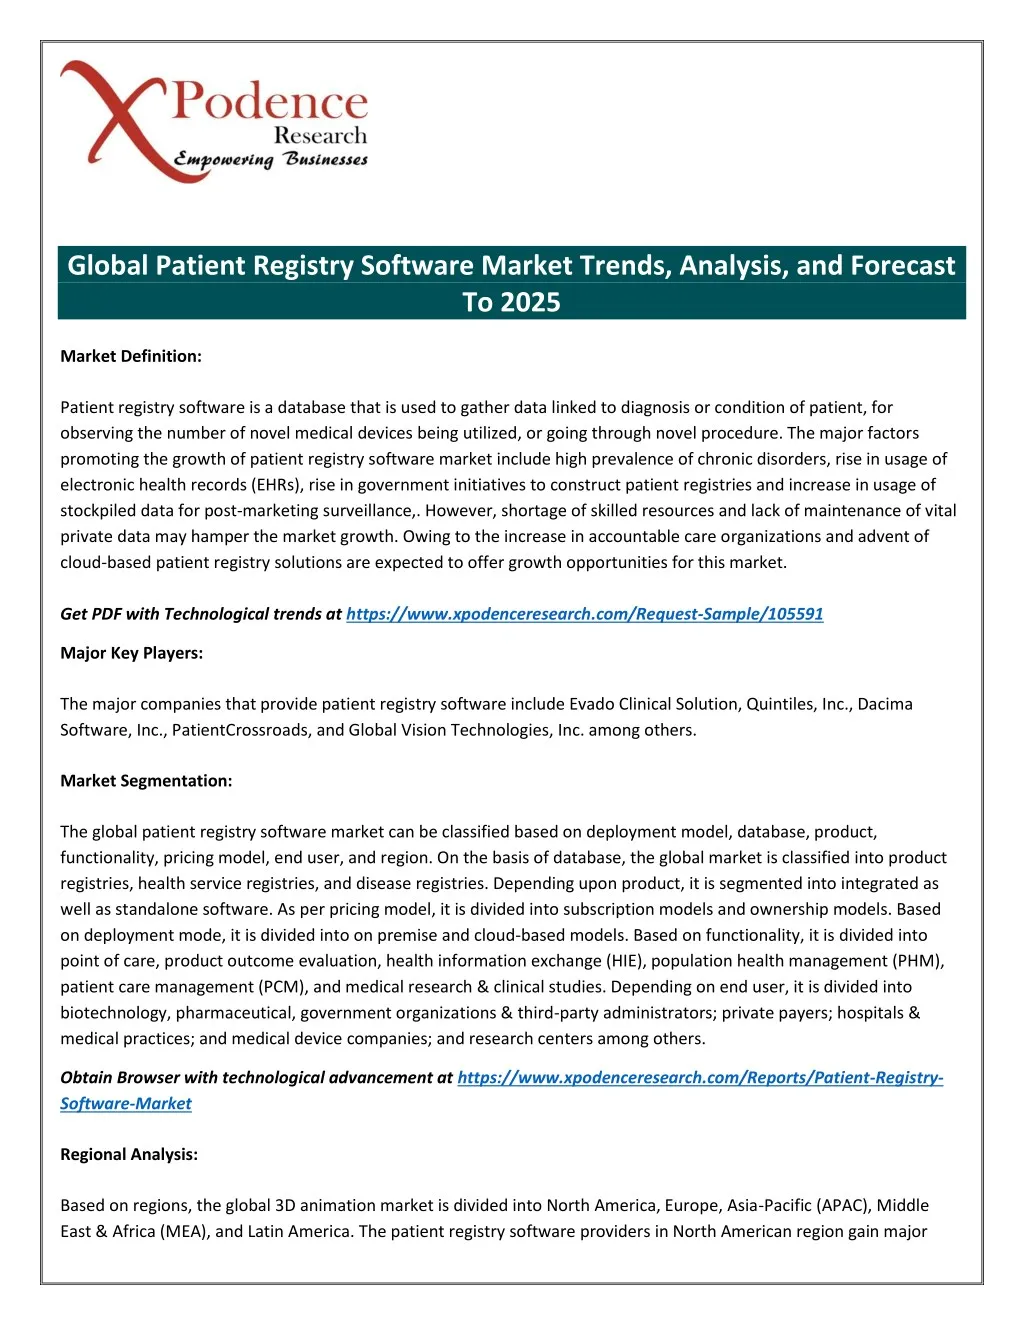 global patient registry software market trends